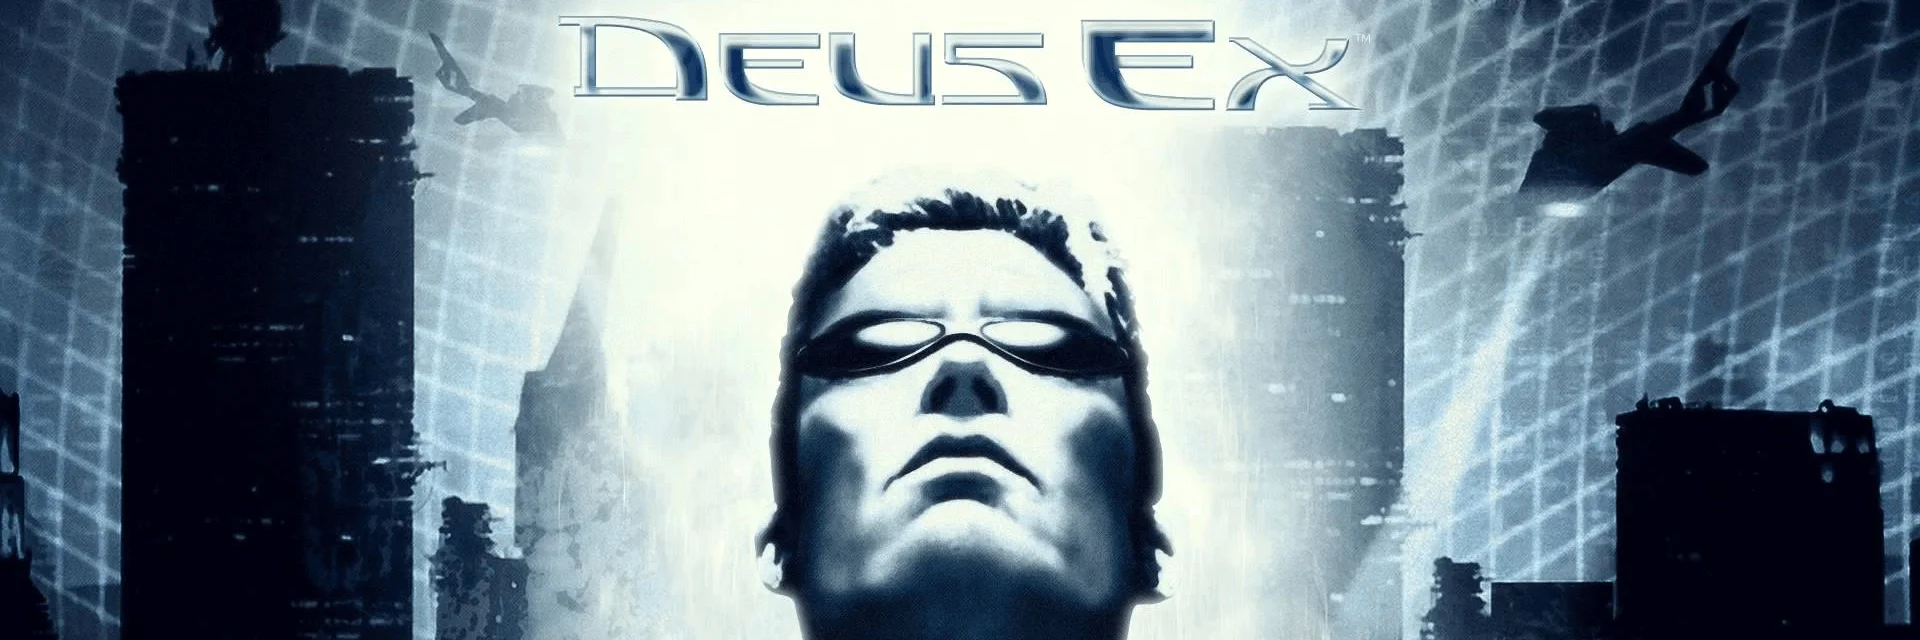 История разработки и мир Deus Ex